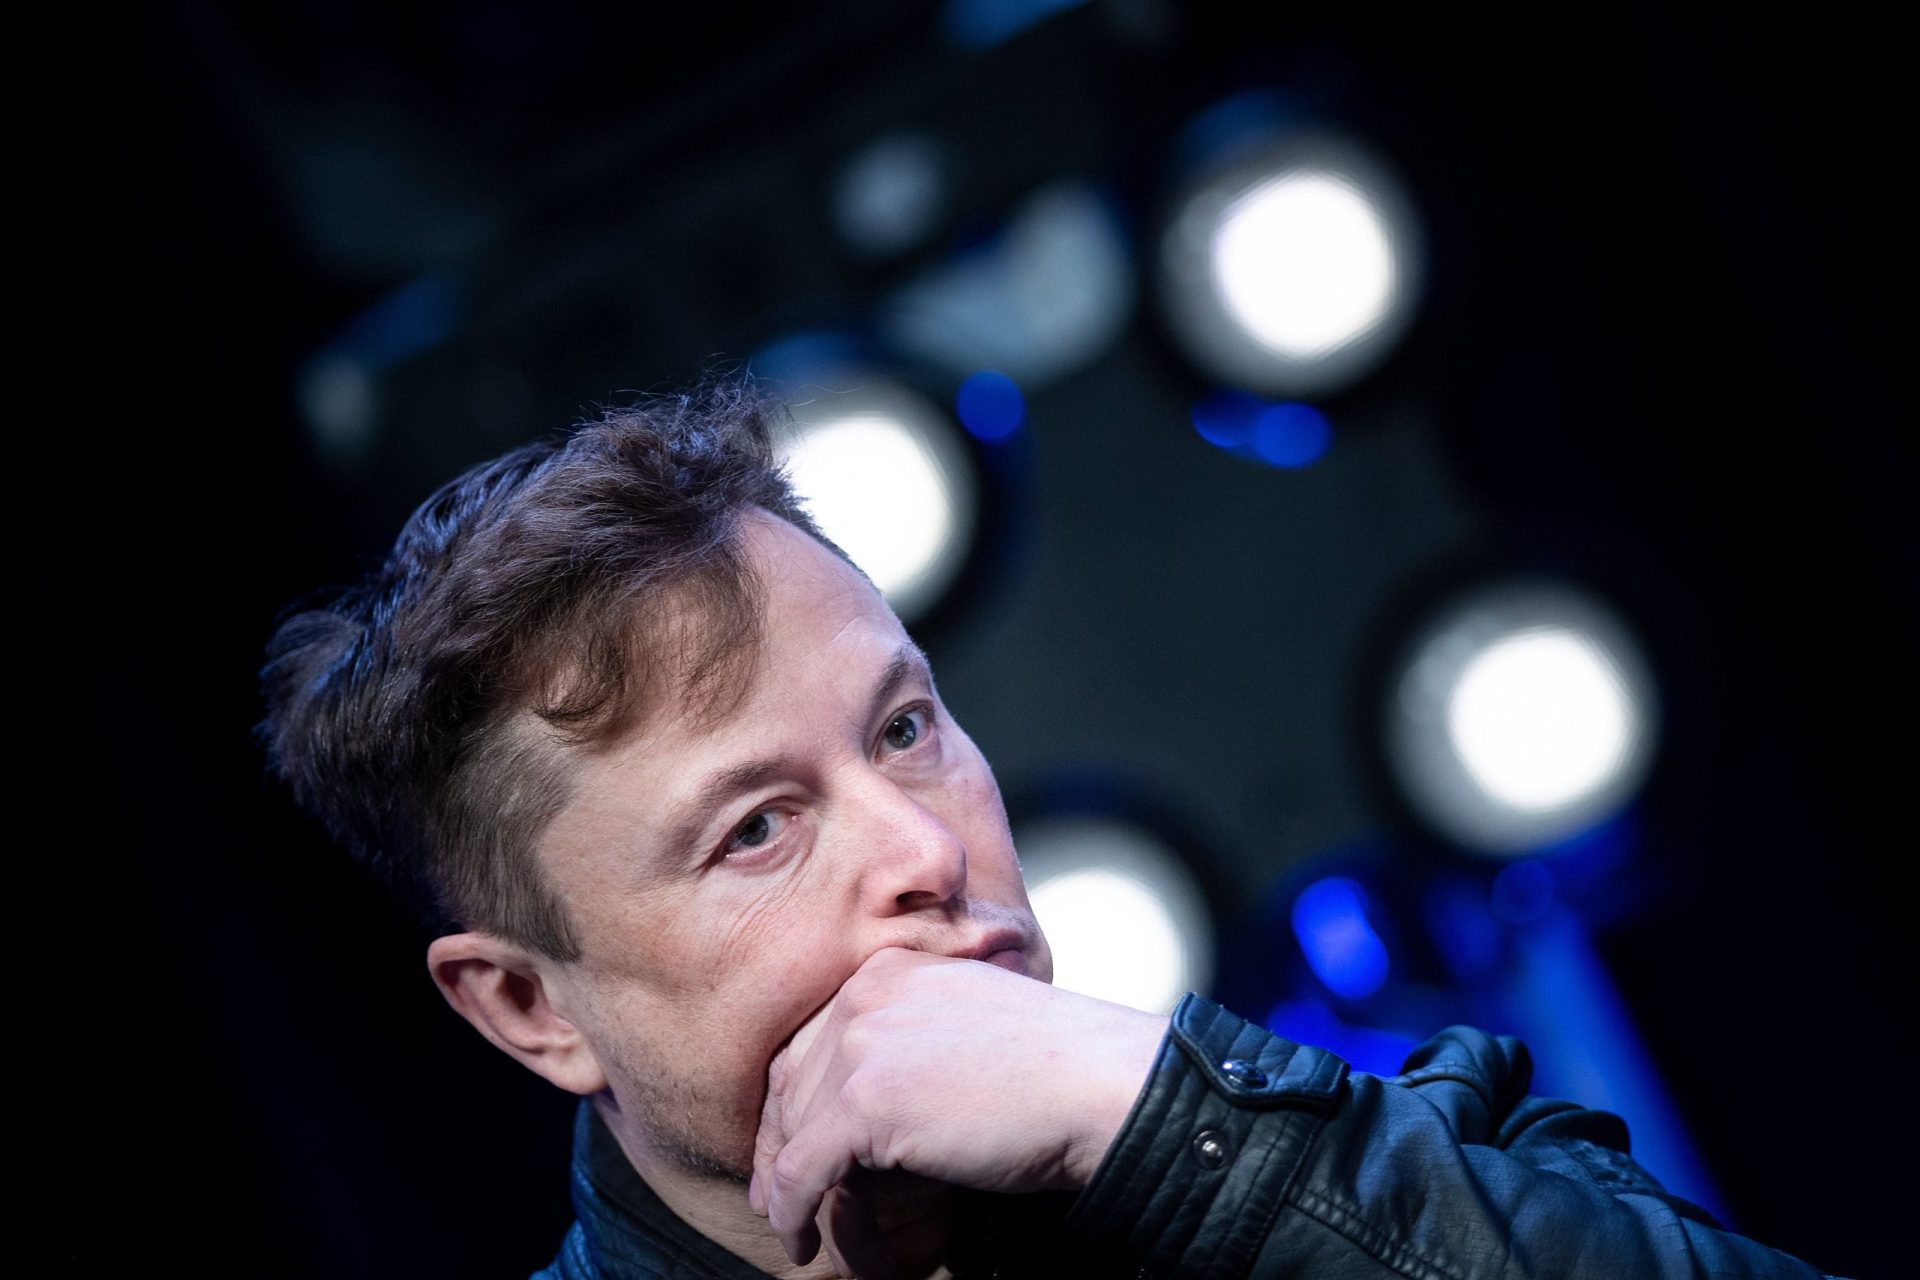 Obrigação de confinamento é “fascista”. Elon Musk exige que “devolvam às pessoas a sua maldita liberdade”